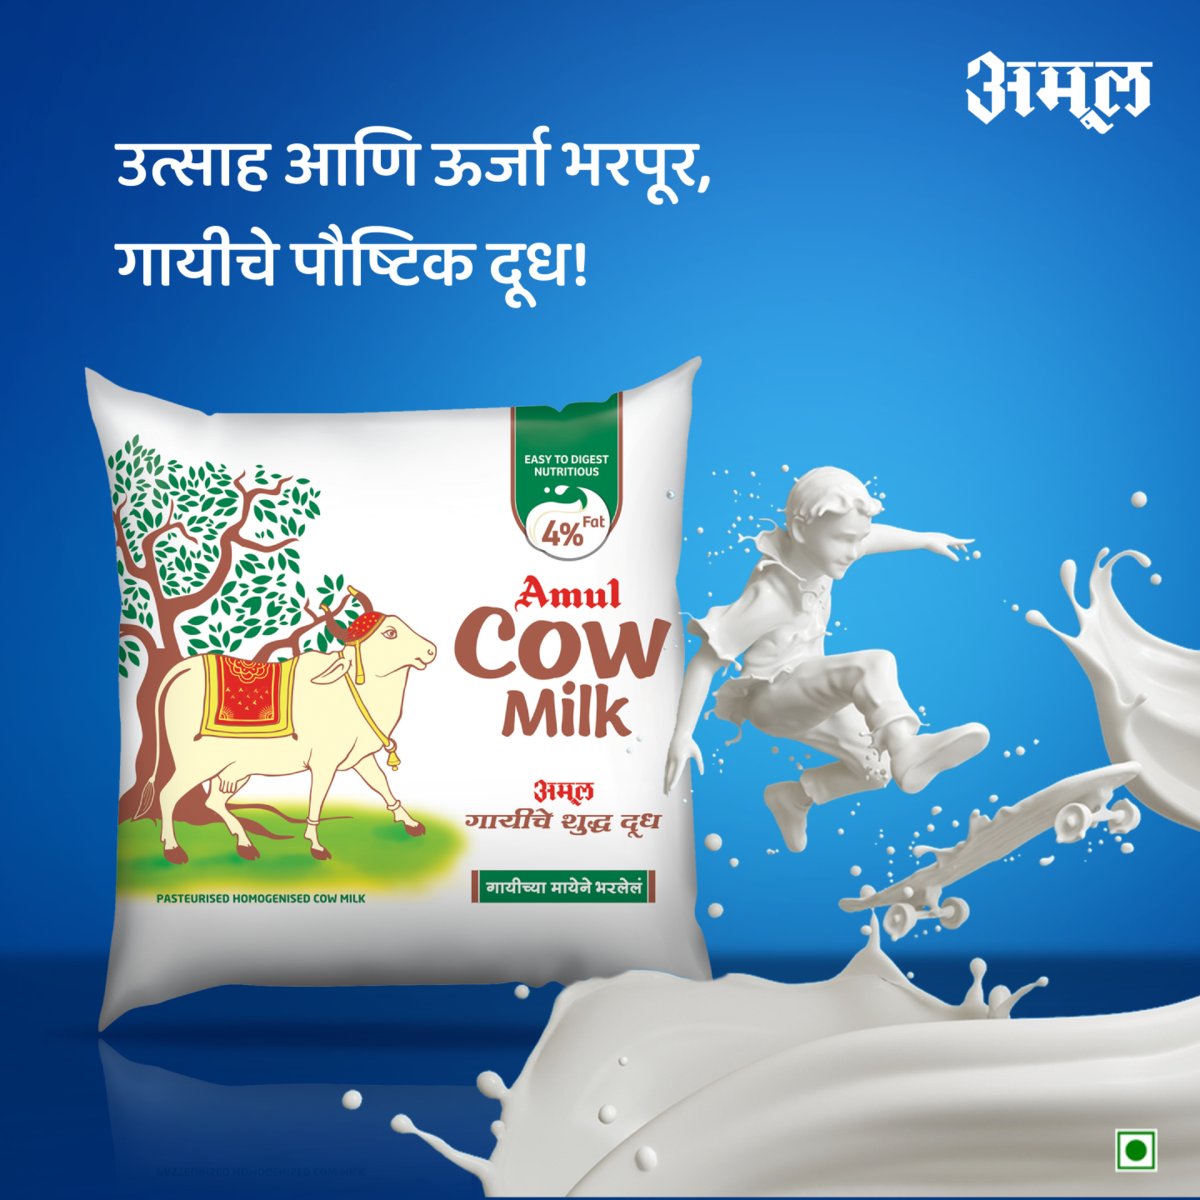 तुमच्या सुदृढ आरोग्यासाठी महत्वाचे अमूल गाईचे दूध!
.
.
.
#Amul #AmulIndia #amulMarathi #AmulMaharashtra #AmulCowMilk #CowMilk